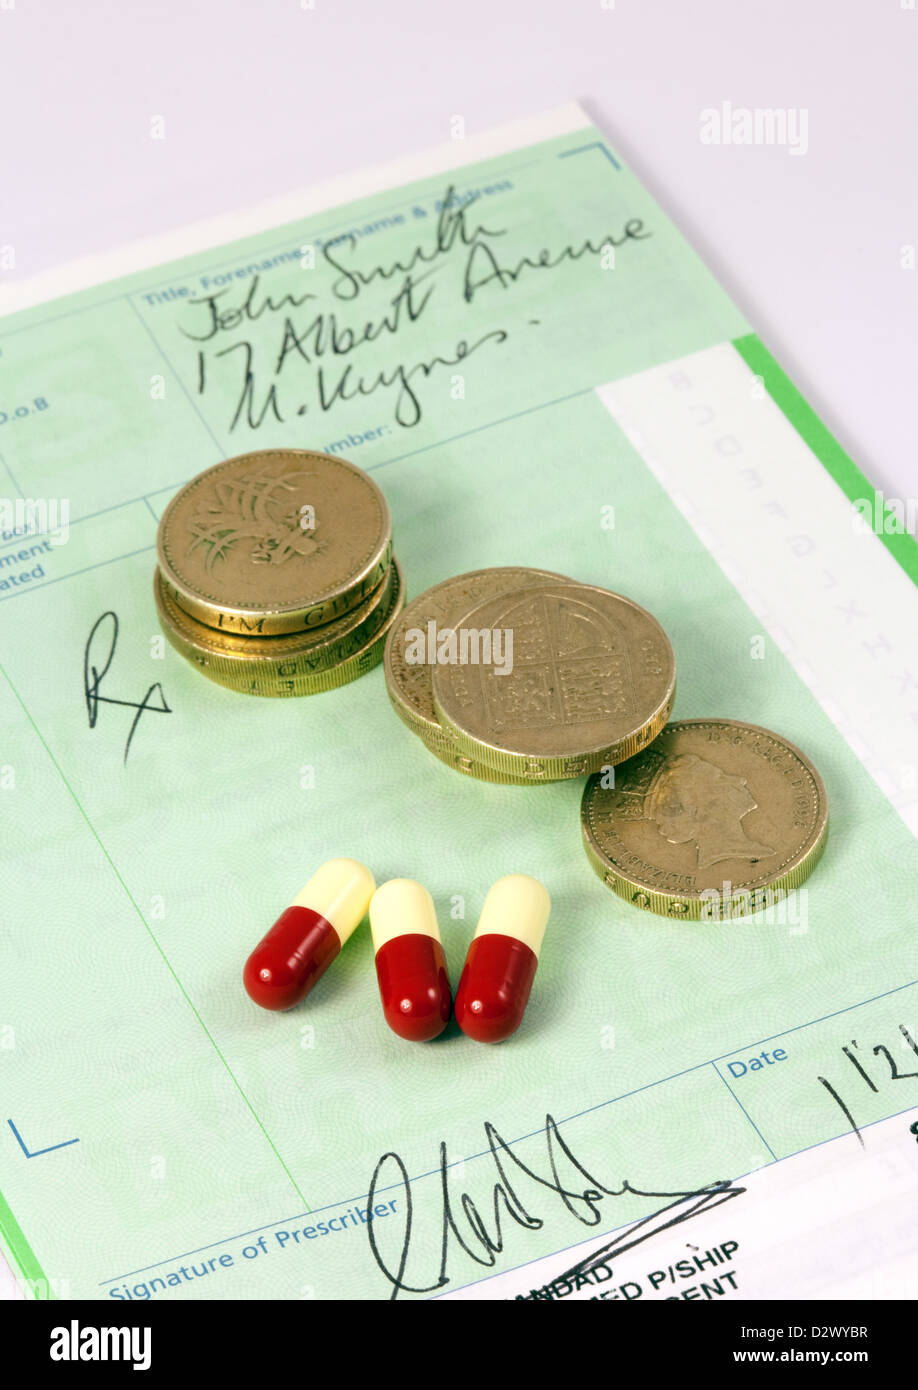 Receta de NHS con pound monedas y fármacos para ilustrar el concepto de costos de medicamentos recetados, REINO UNIDO Foto de stock